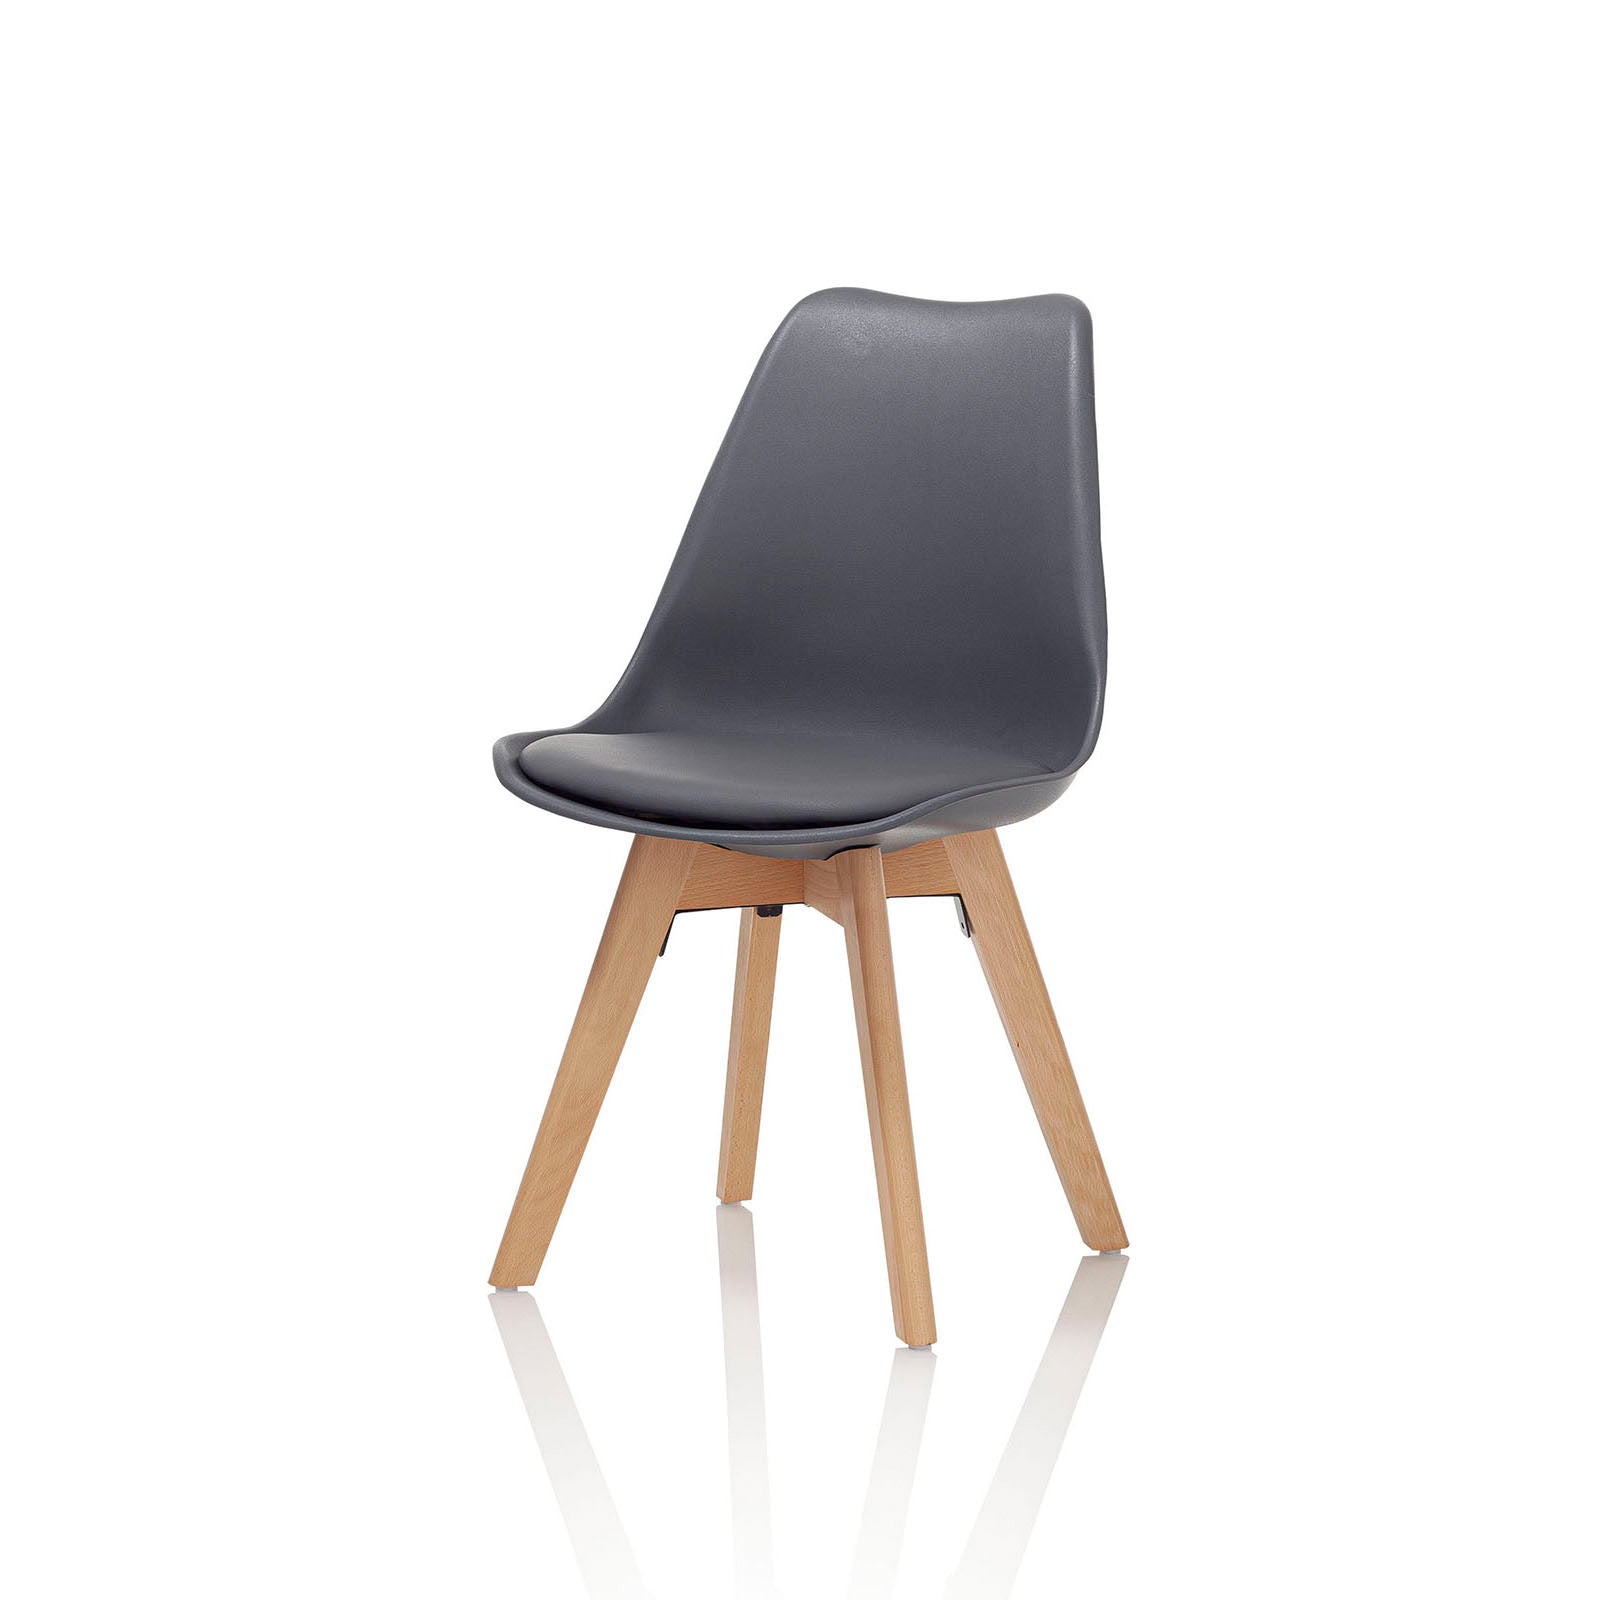 Conjunto de 4 sillas ALBA en madera y símil piel